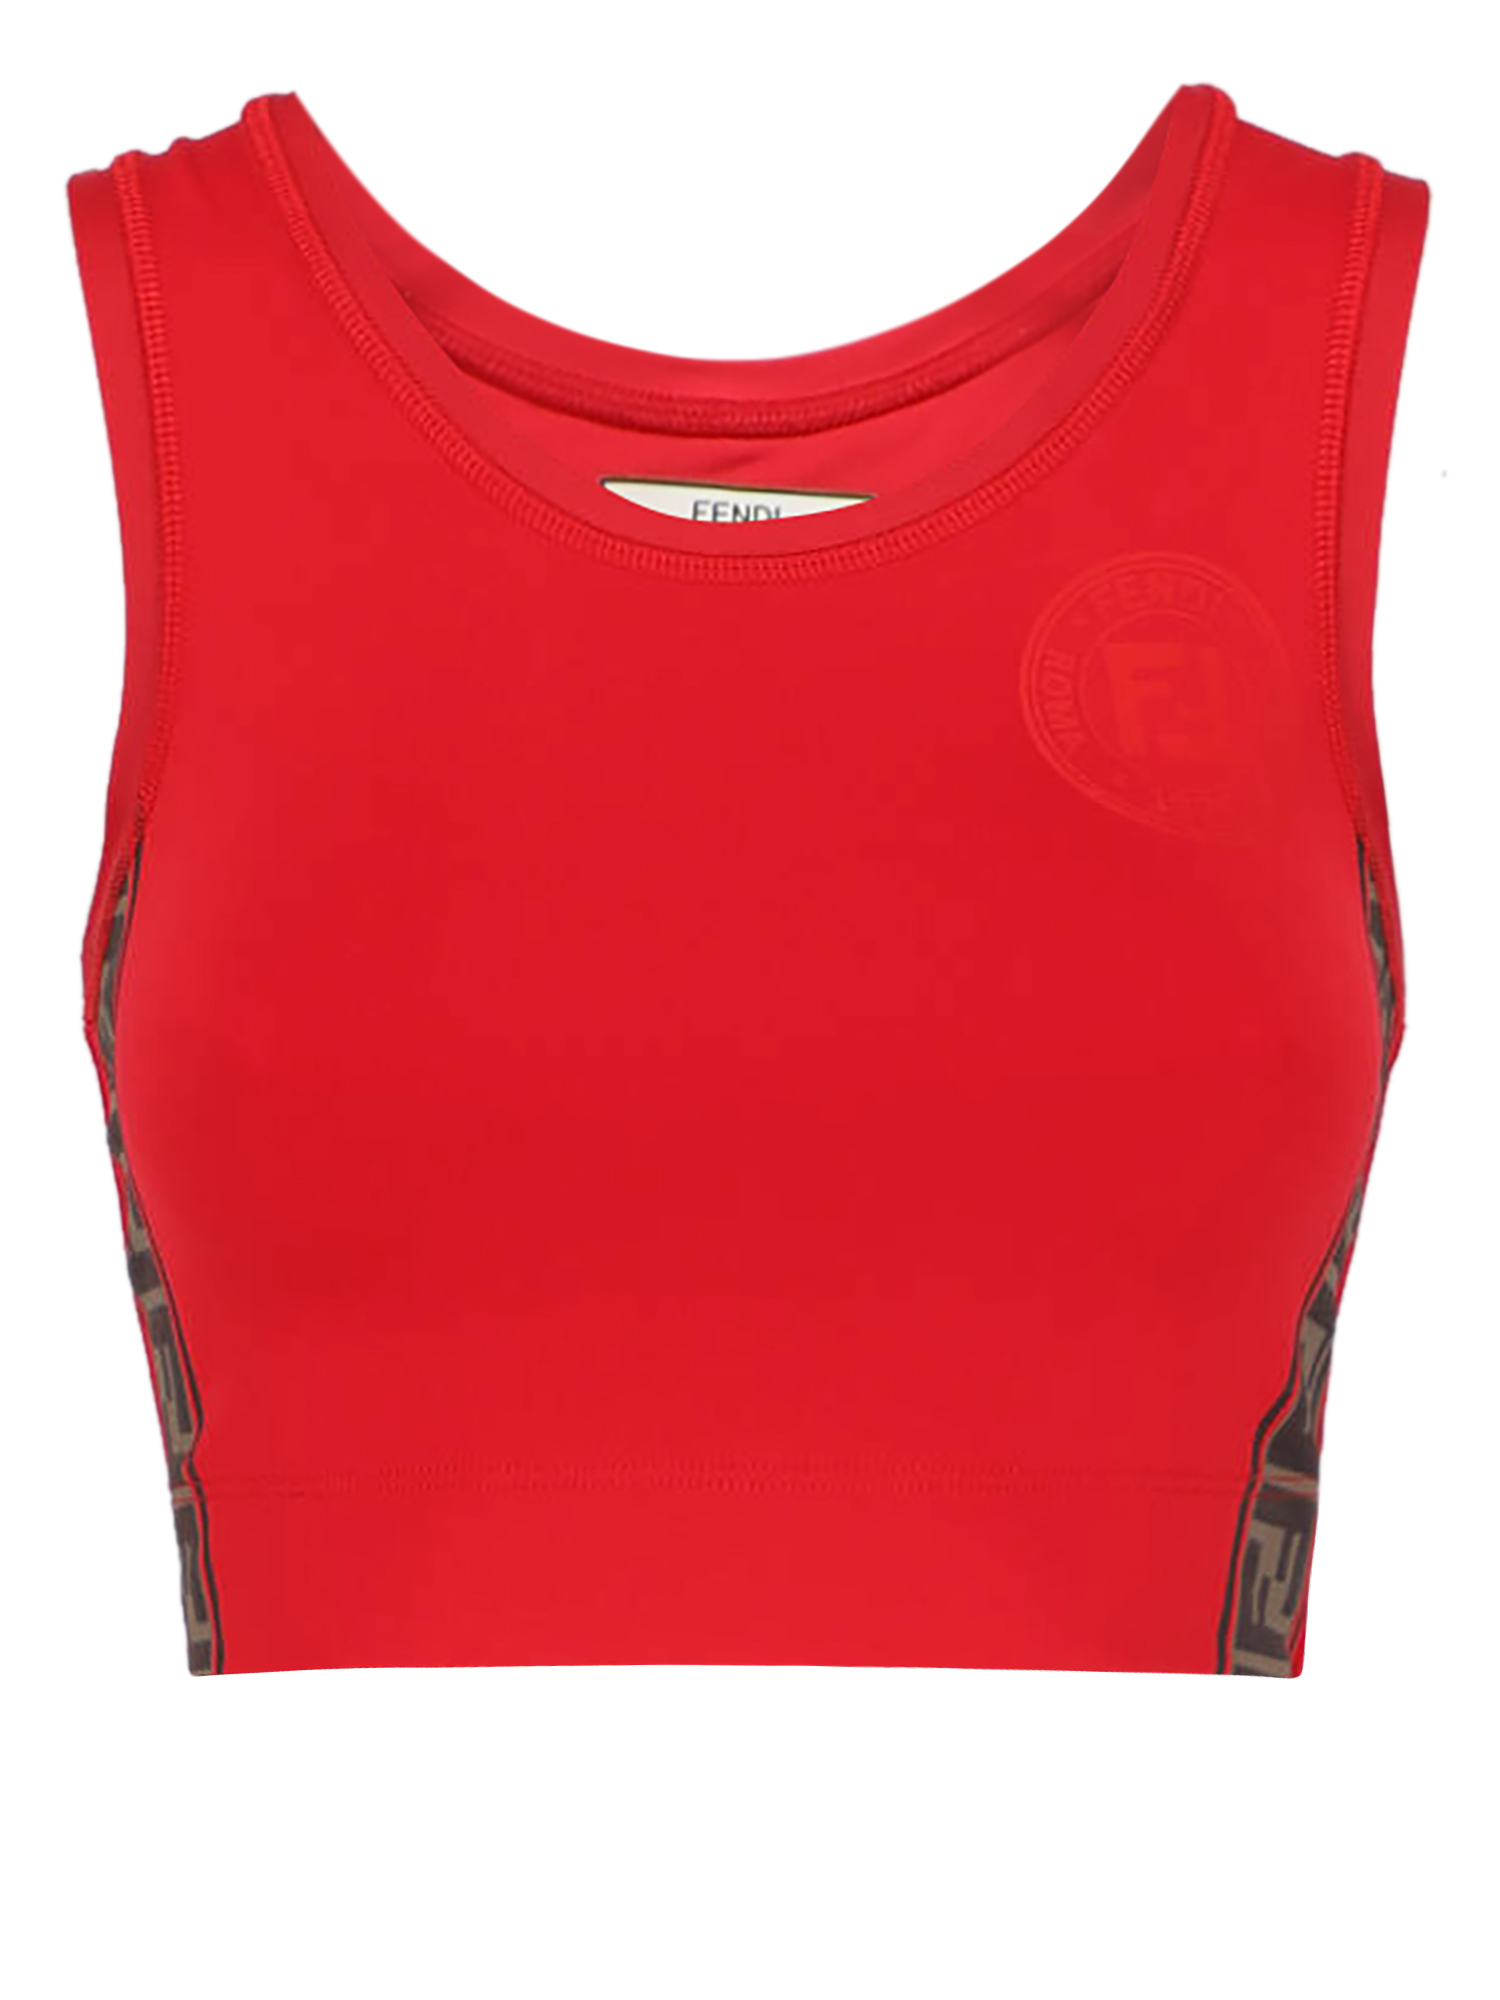 T-shirts Et Tops Pour Femme - Fendi - En Synthetic Fibers Red - Taille:  -